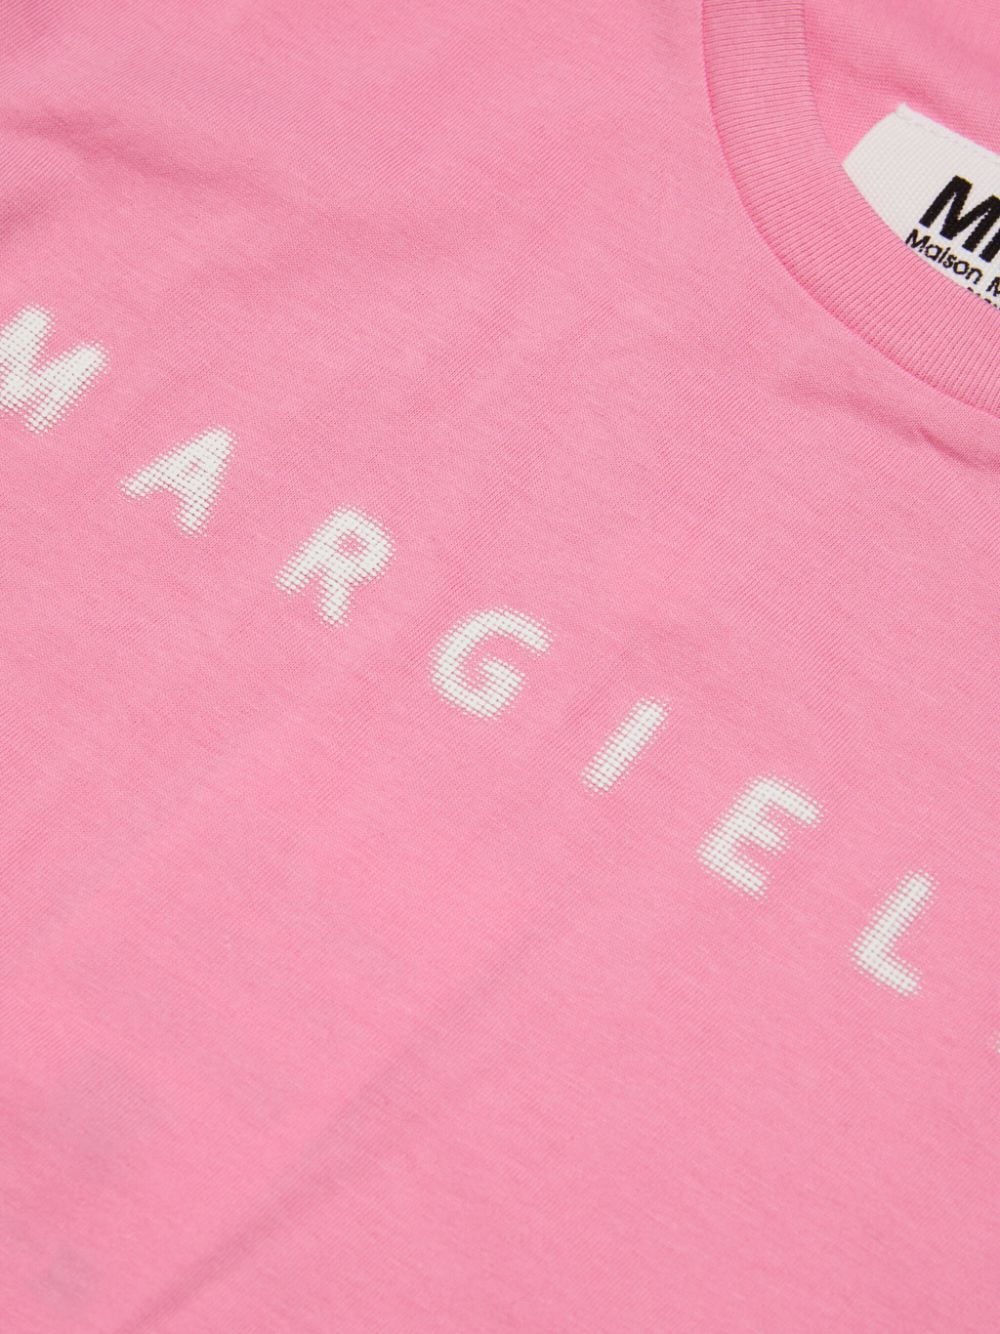 Maison Margiela Kids t-shirt with logo